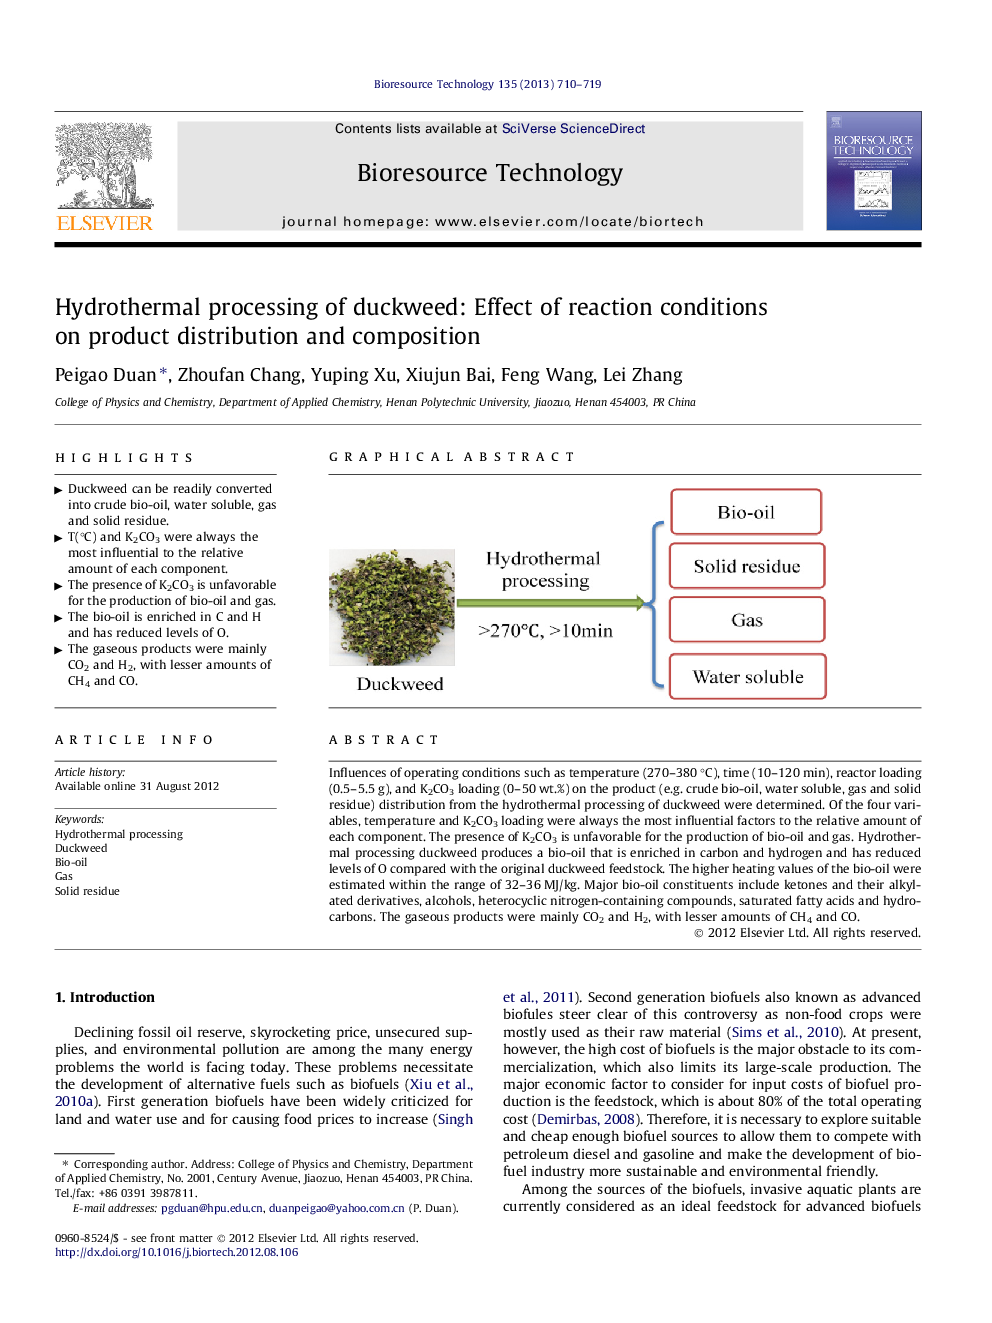 پردازش هیدروترمال جلبک دریایی: اثر شرایط واکنش بر توزیع و ترکیب محصول 